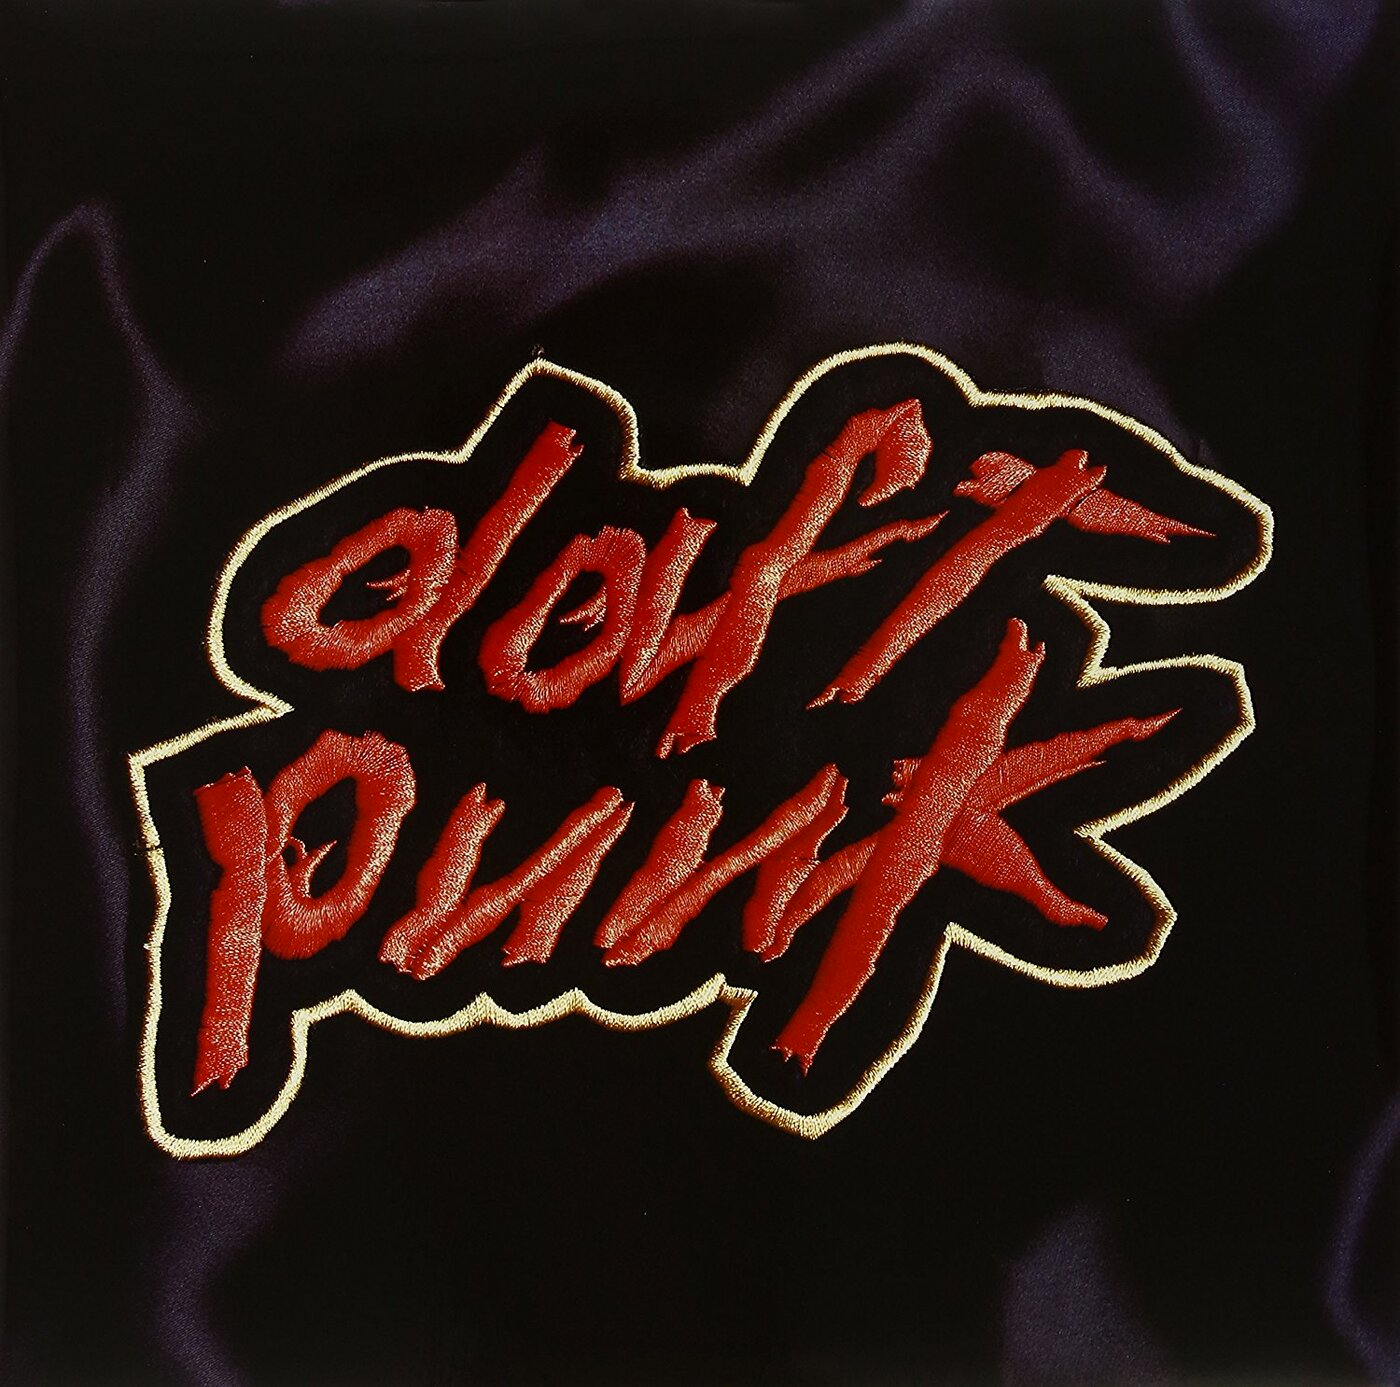 Daft Punk выпустили переиздание Homework в честь 25-летия